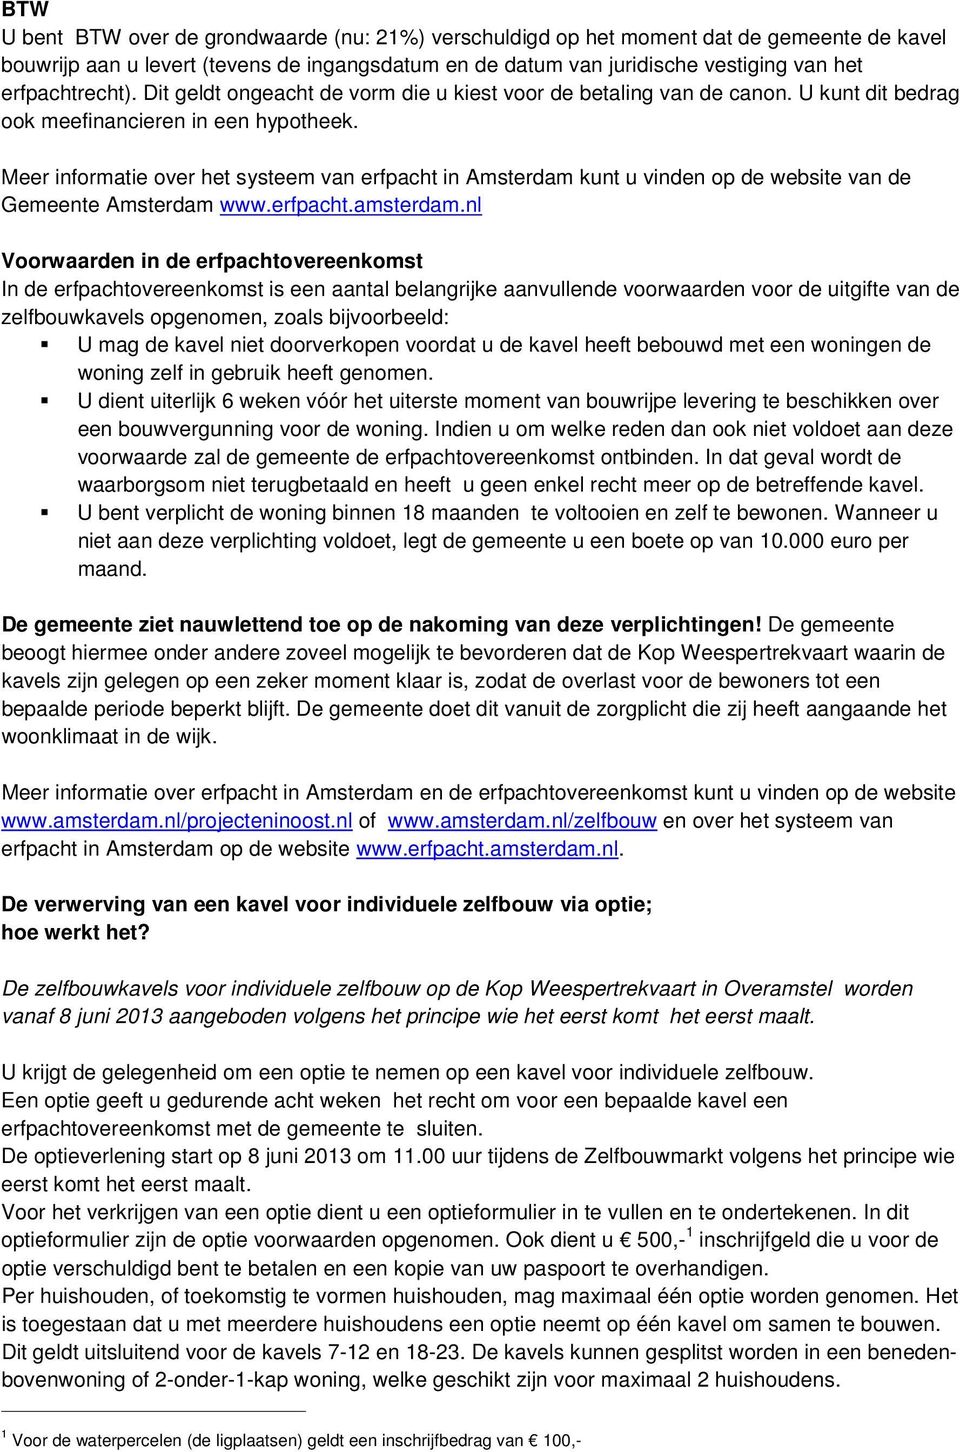 Meer informatie over het systeem van erfpacht in Amsterdam kunt u vinden op de website van de Gemeente Amsterdam www.erfpacht.amsterdam.